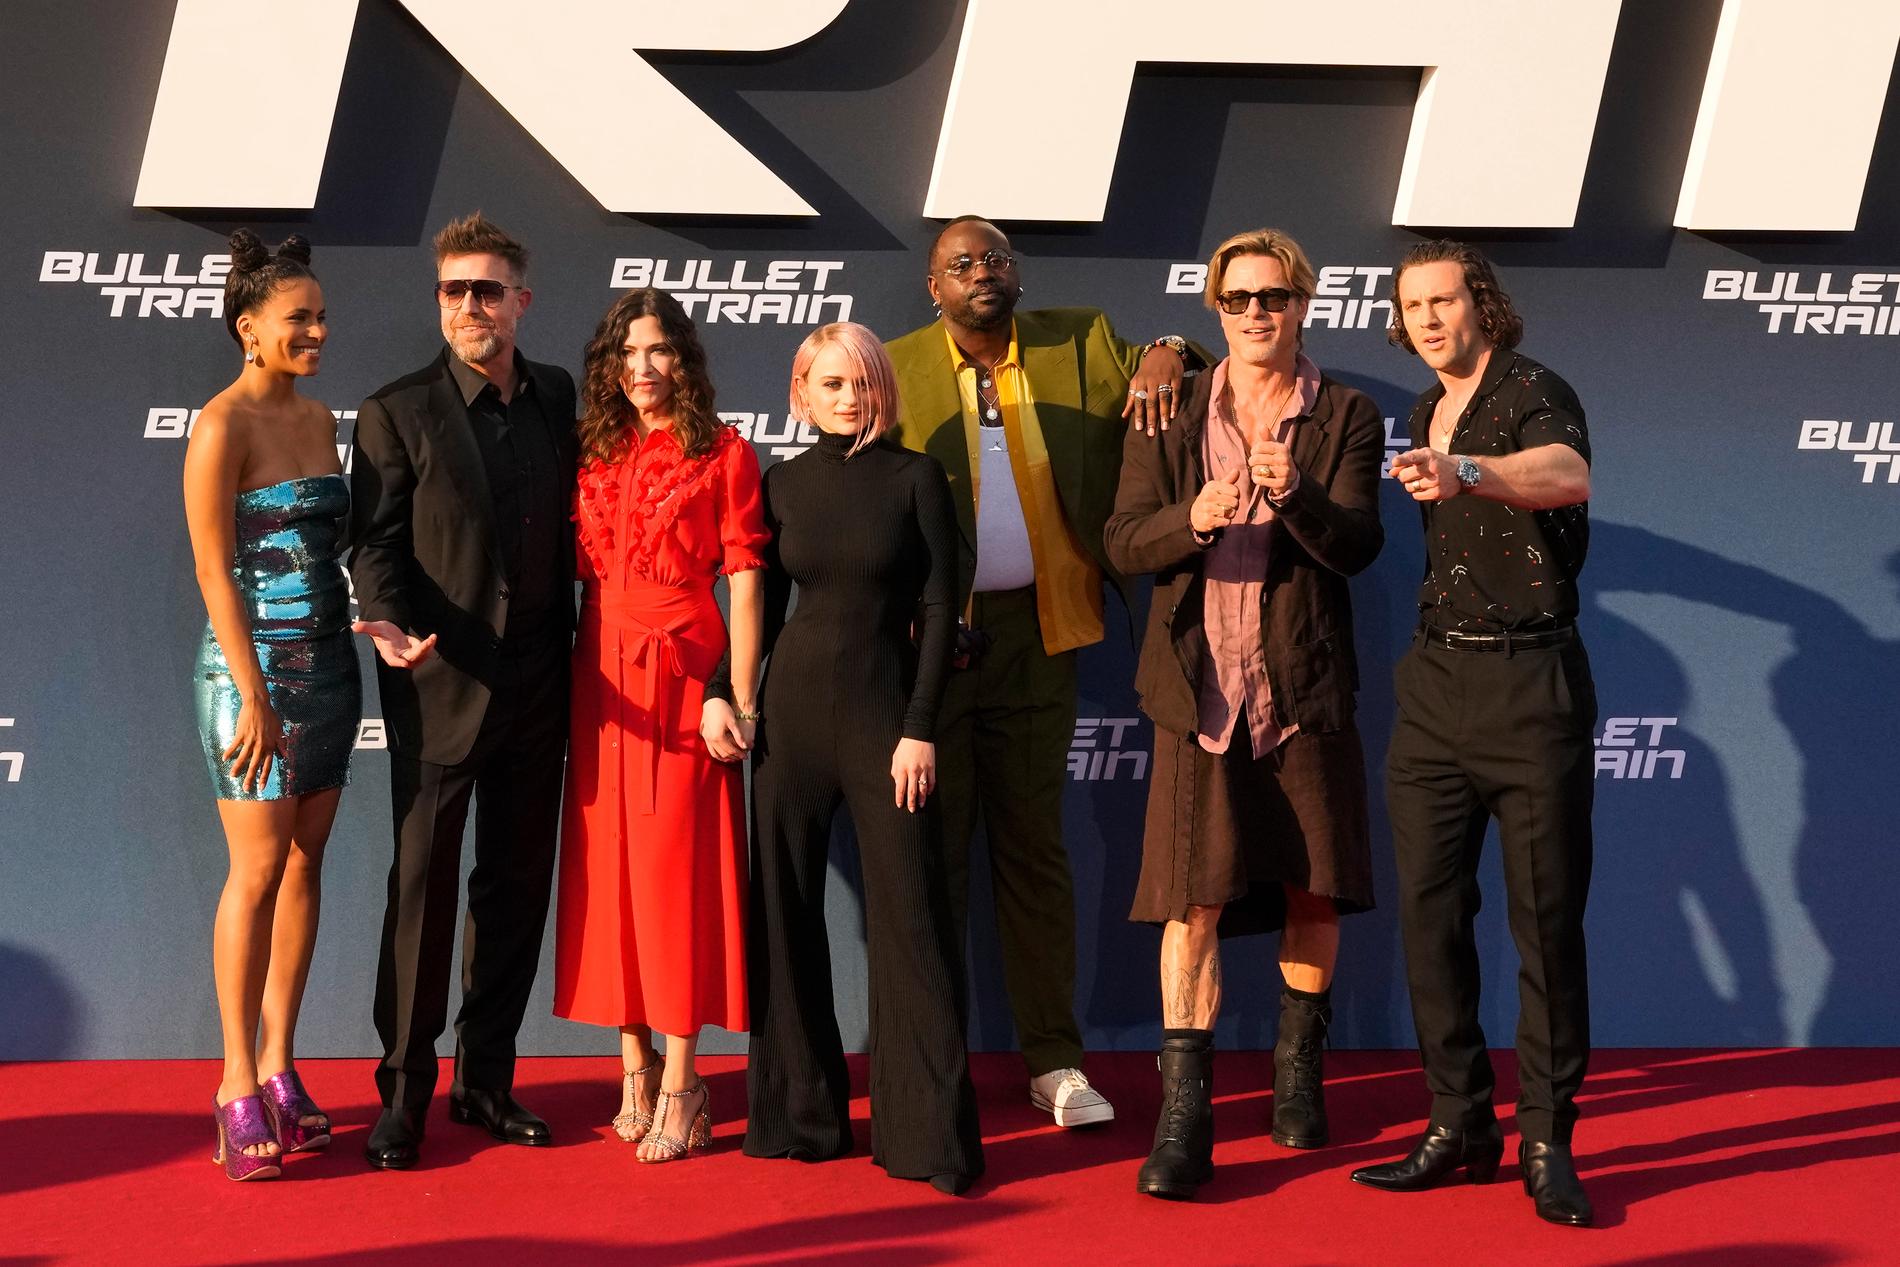 Brad Pitt omgiven av (från vänster) Zazie Beetz, David Leitch, Kelly McCormick, Joey King, Brian Tyree Henry och Aaron Taylor-Johnson inför premiären av filmen ”Bullet train” i Berlin.